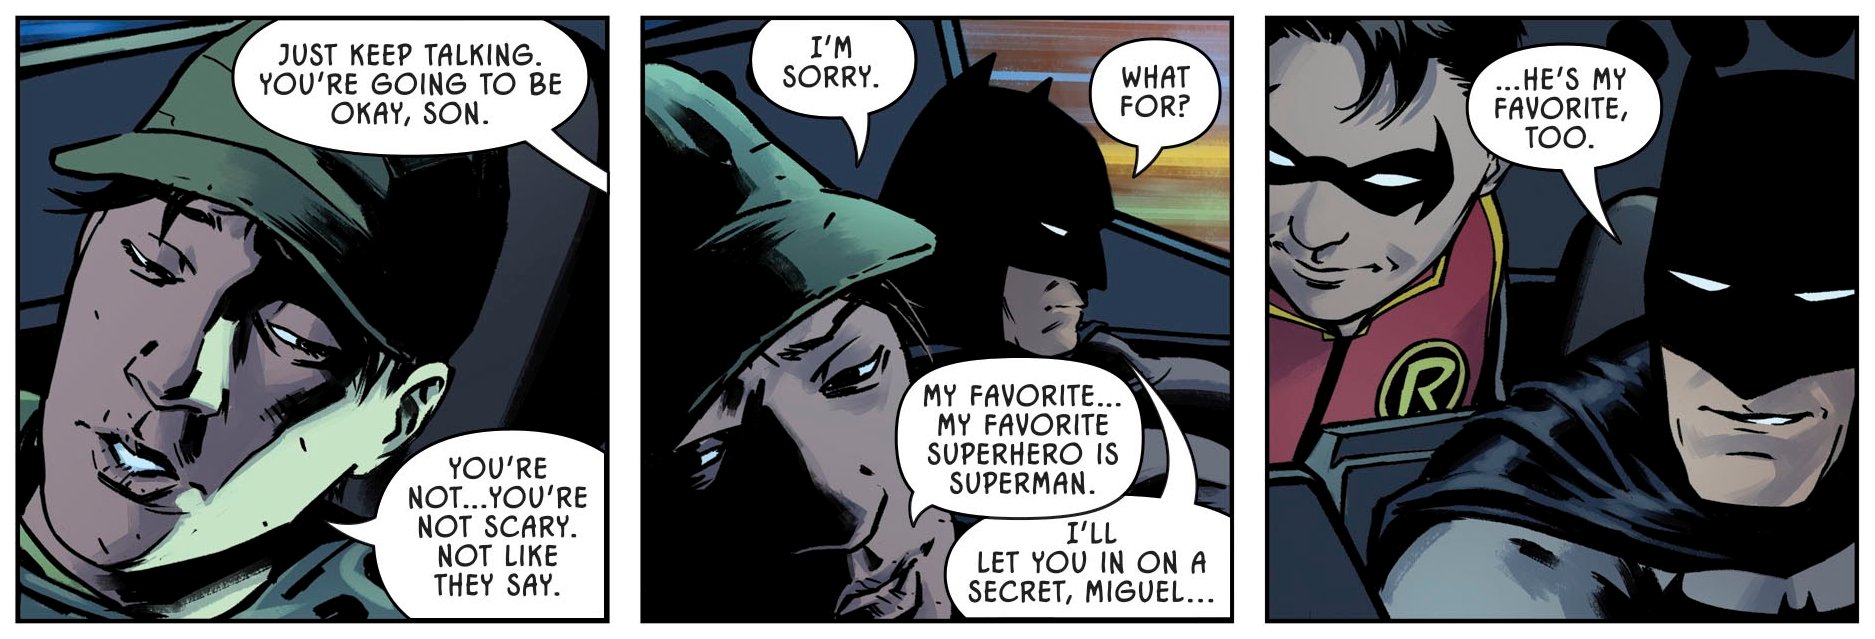 Detective Comics #1017